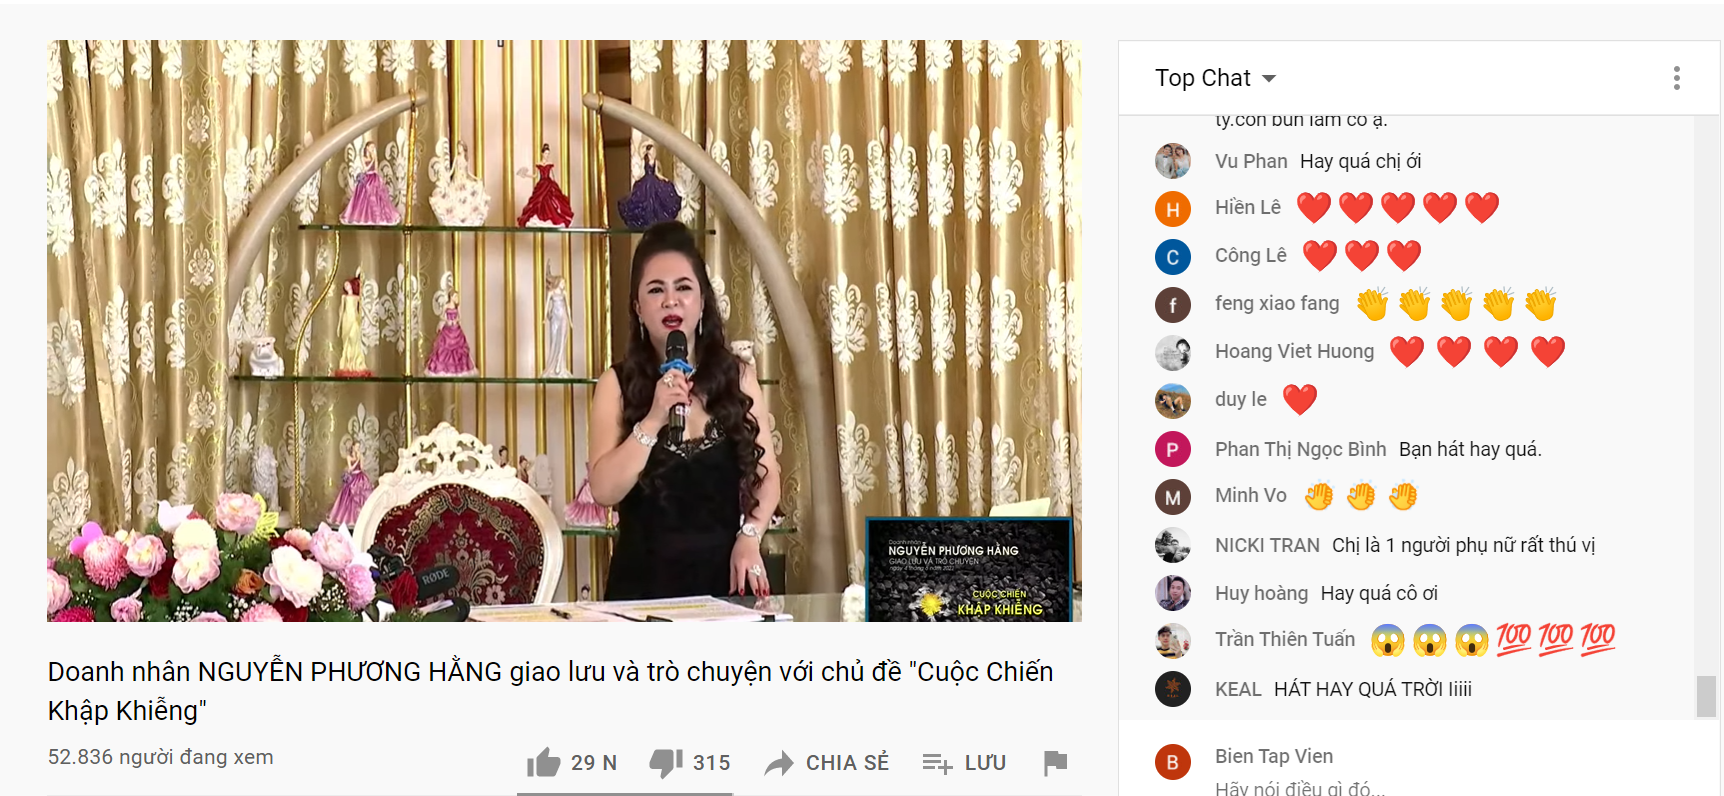 Hàng ngàn người bỏ cơm, bỏ 'Thời sự' nghe bà Nguyễn Phương Hằng hát karaoke - Ảnh 3